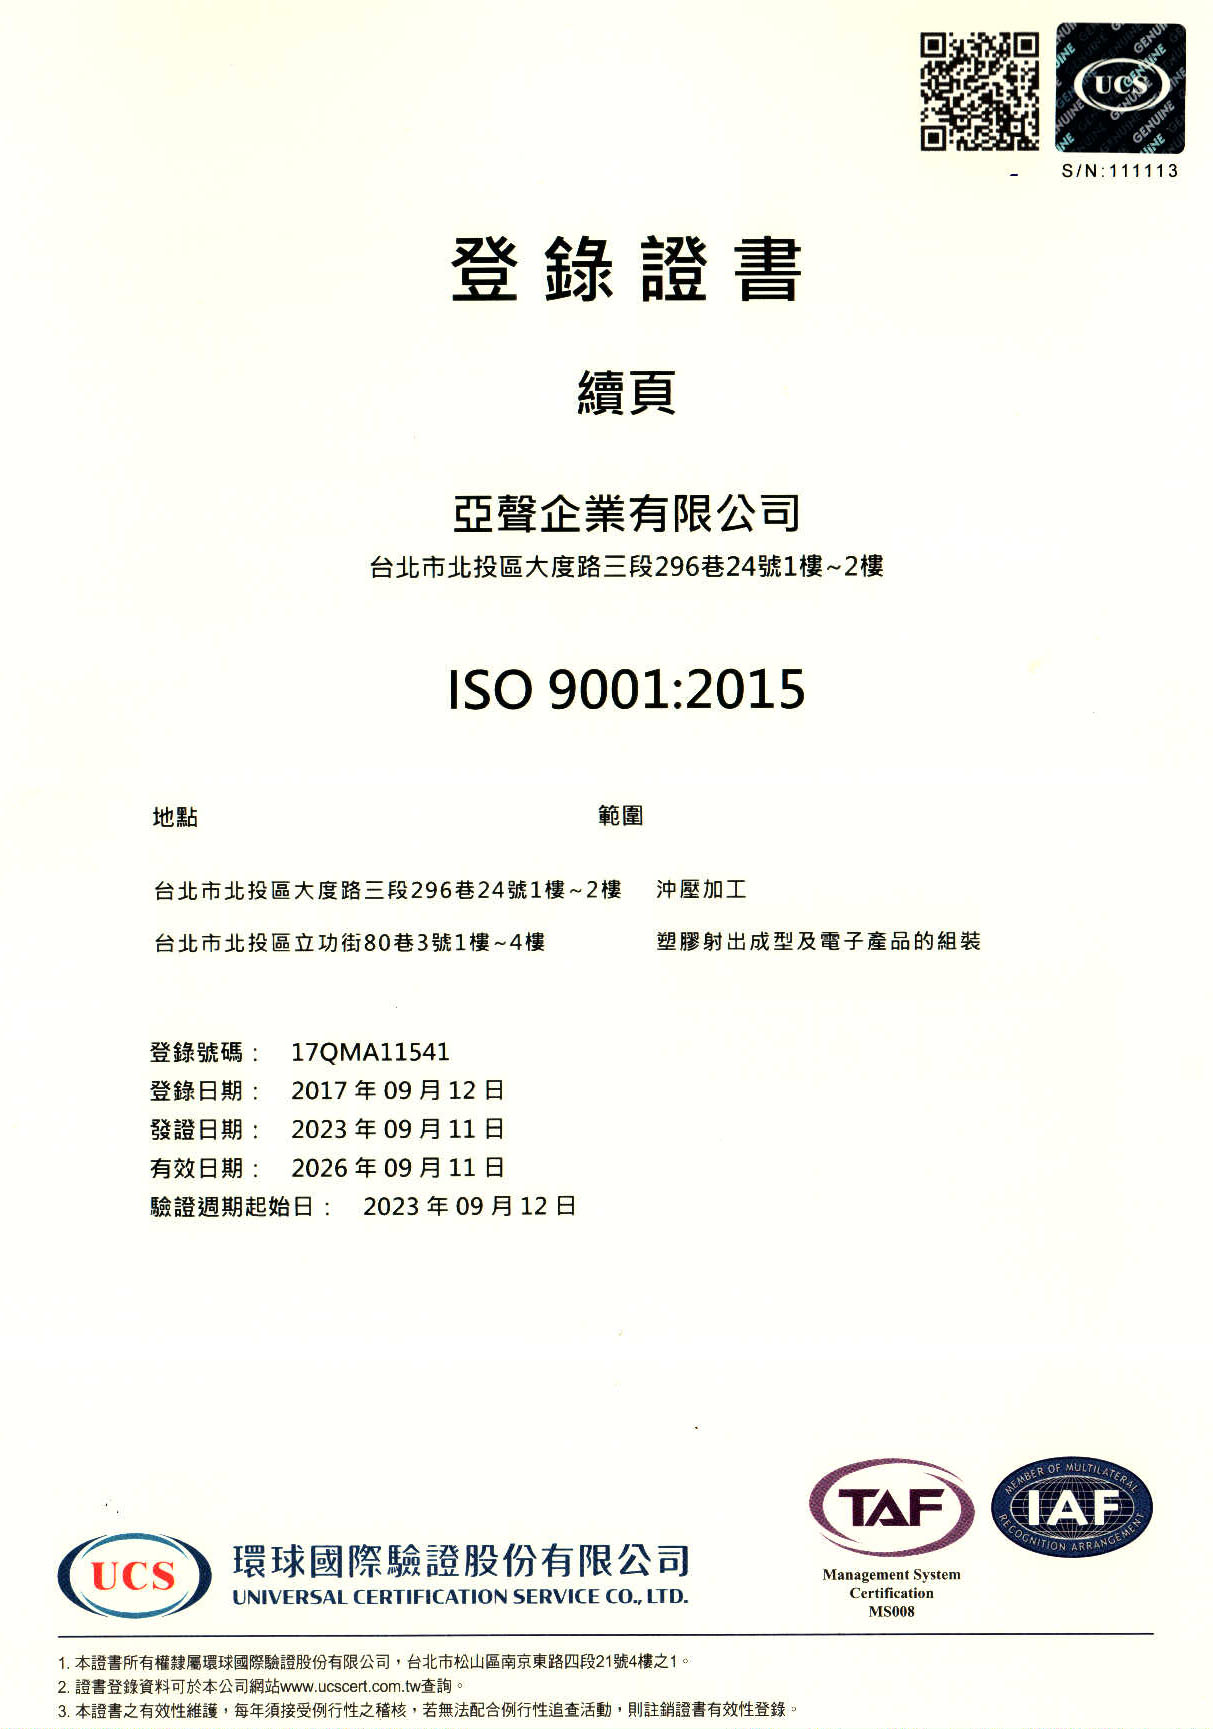 亚声ISO 9001 中文证书续页